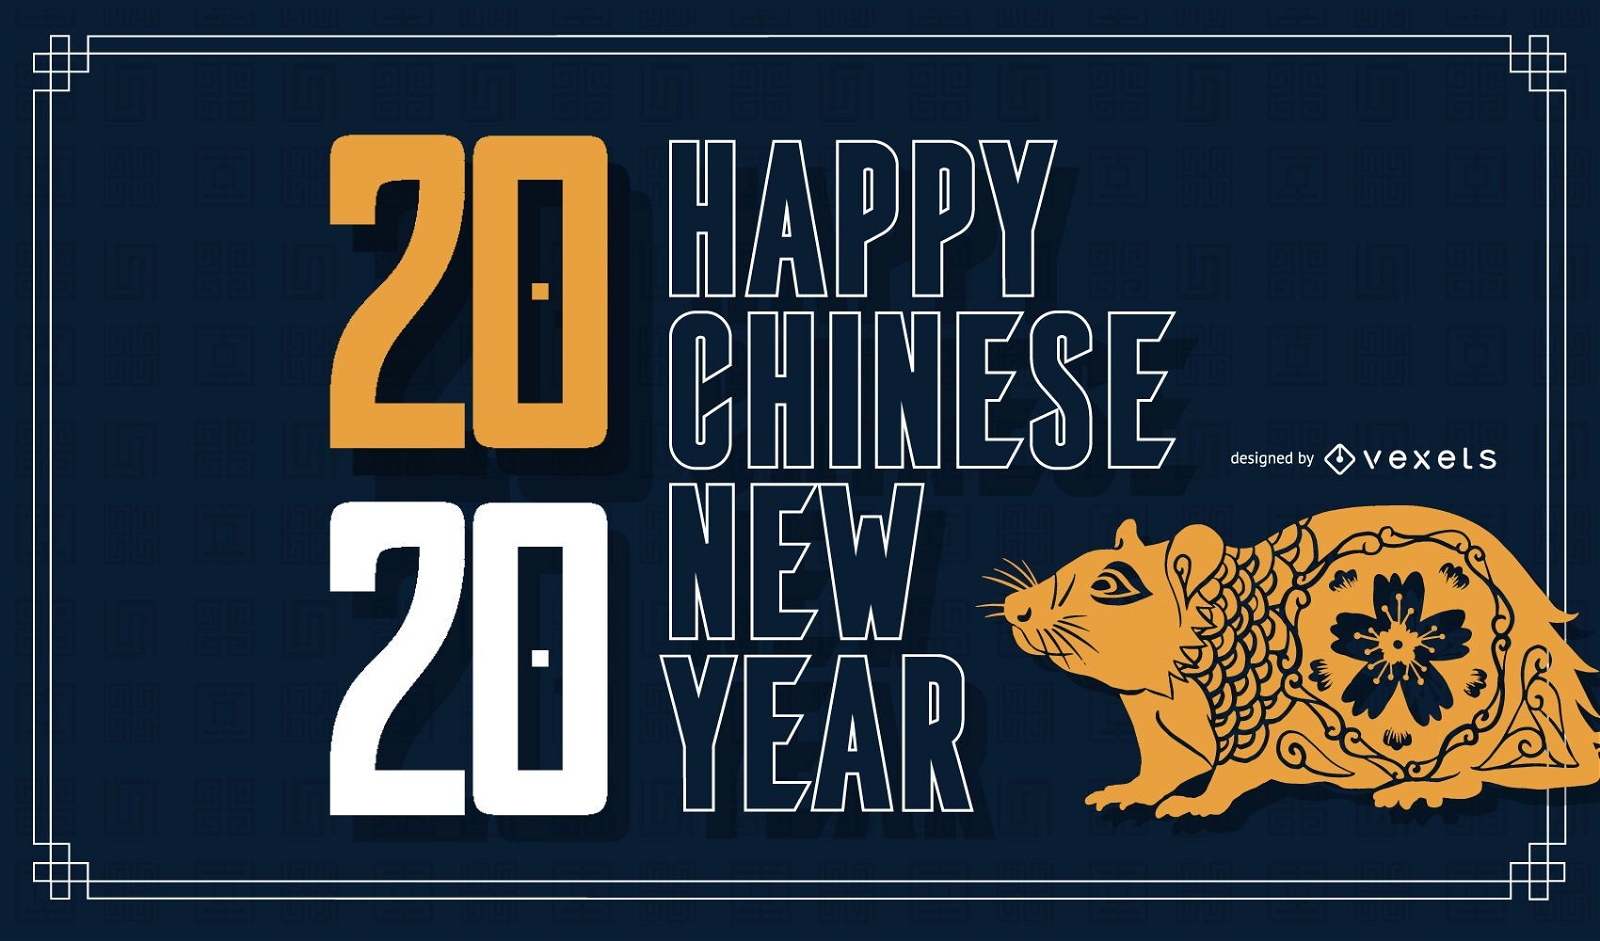 Banner de feliz ano novo chin?s de 2020